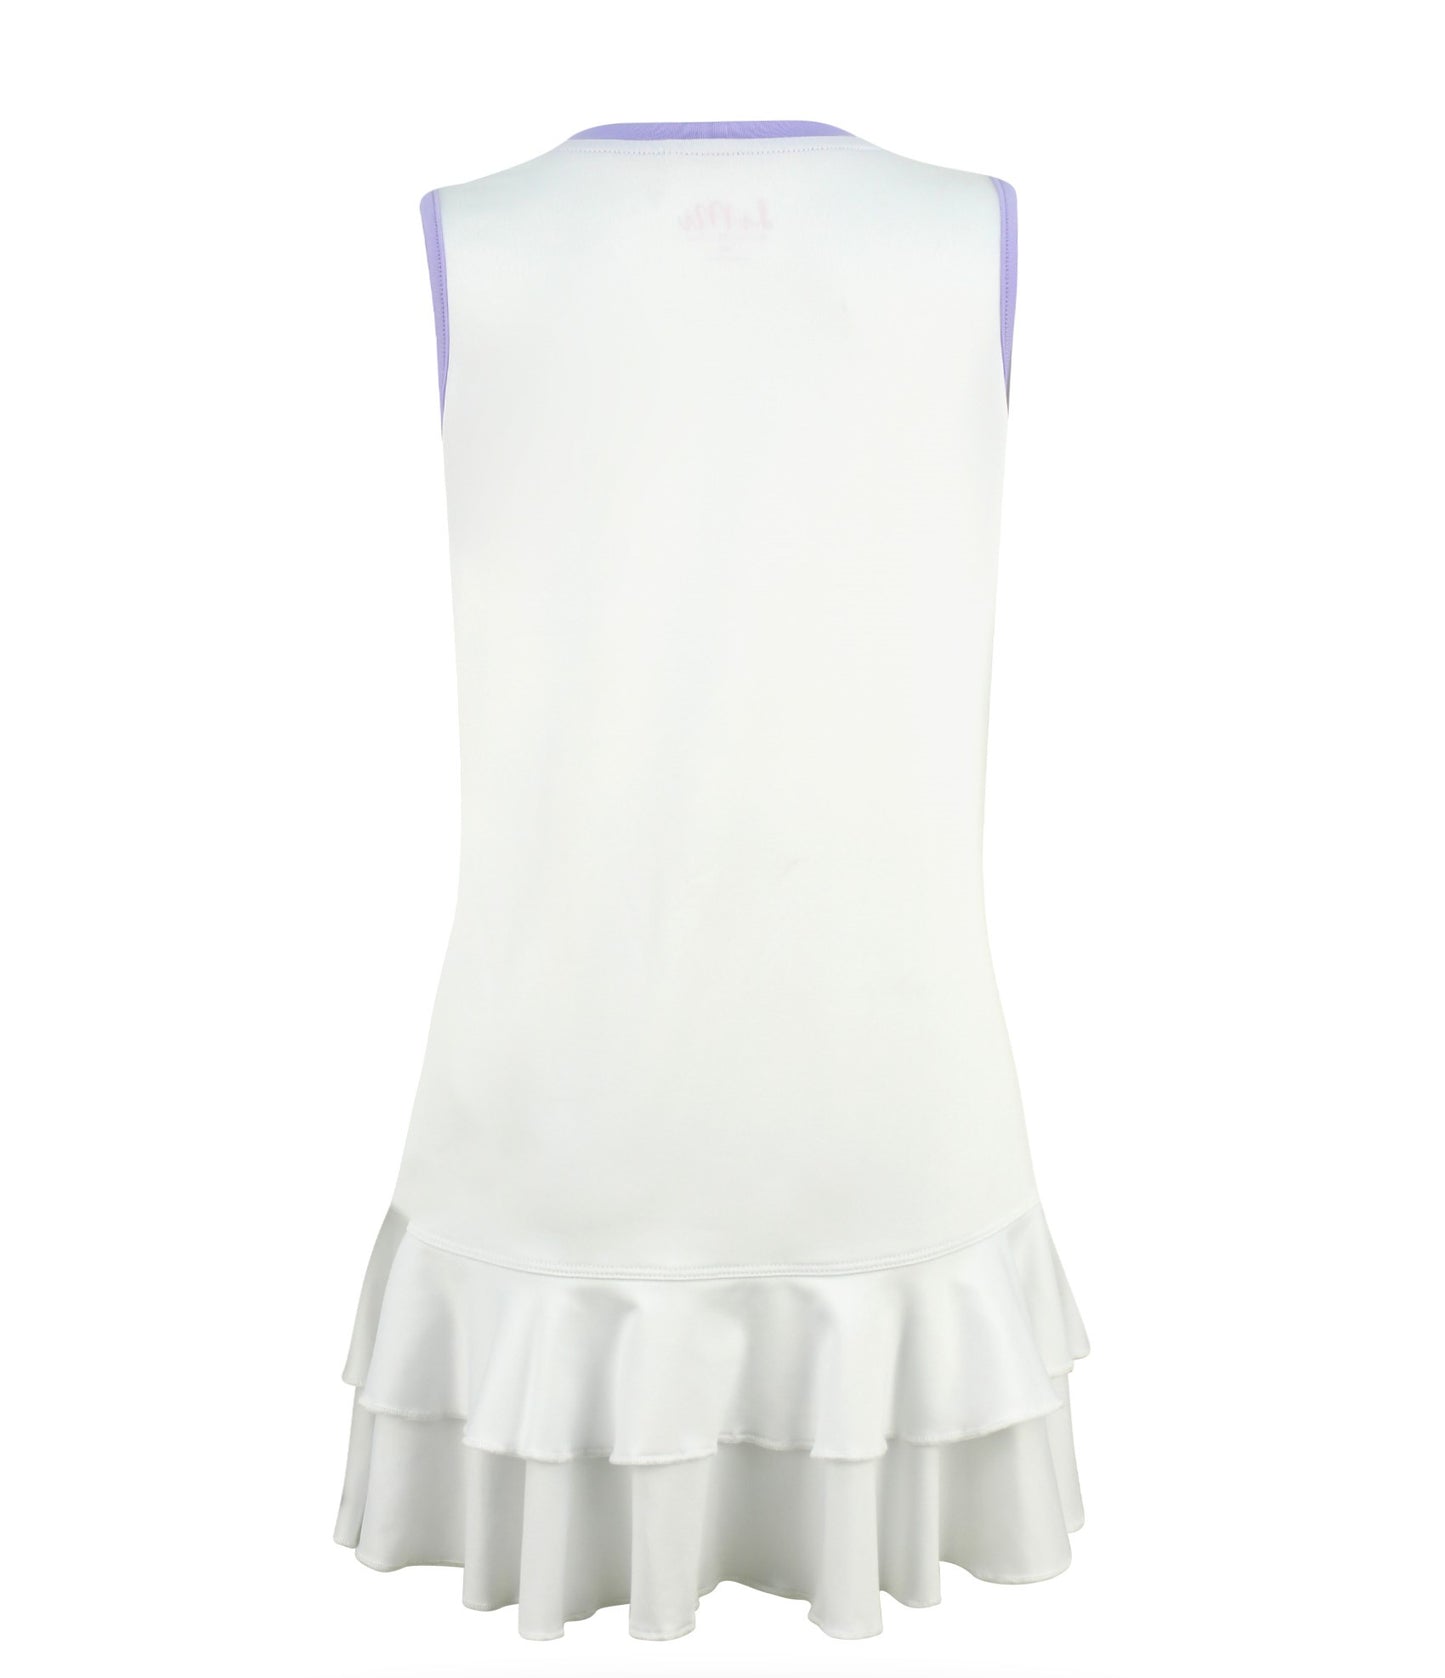 Lilac Lane Ruffle Dress White